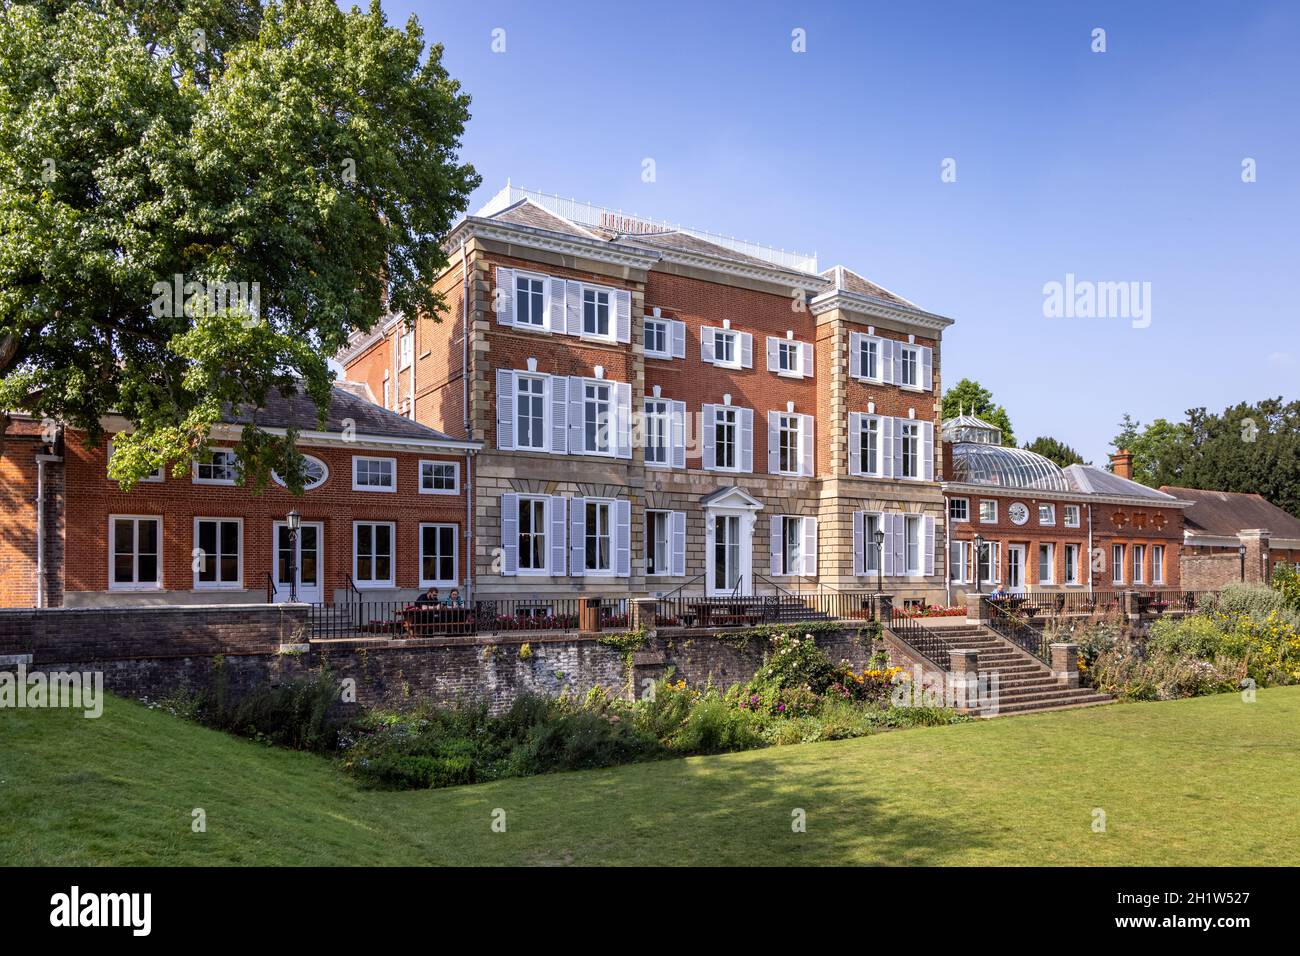 York House est une demeure ancestrale historique de Twickenham, en Angleterre, et sert actuellement comme hôtel de ville du quartier de Londres de Richmond-upon-Thames. Banque D'Images